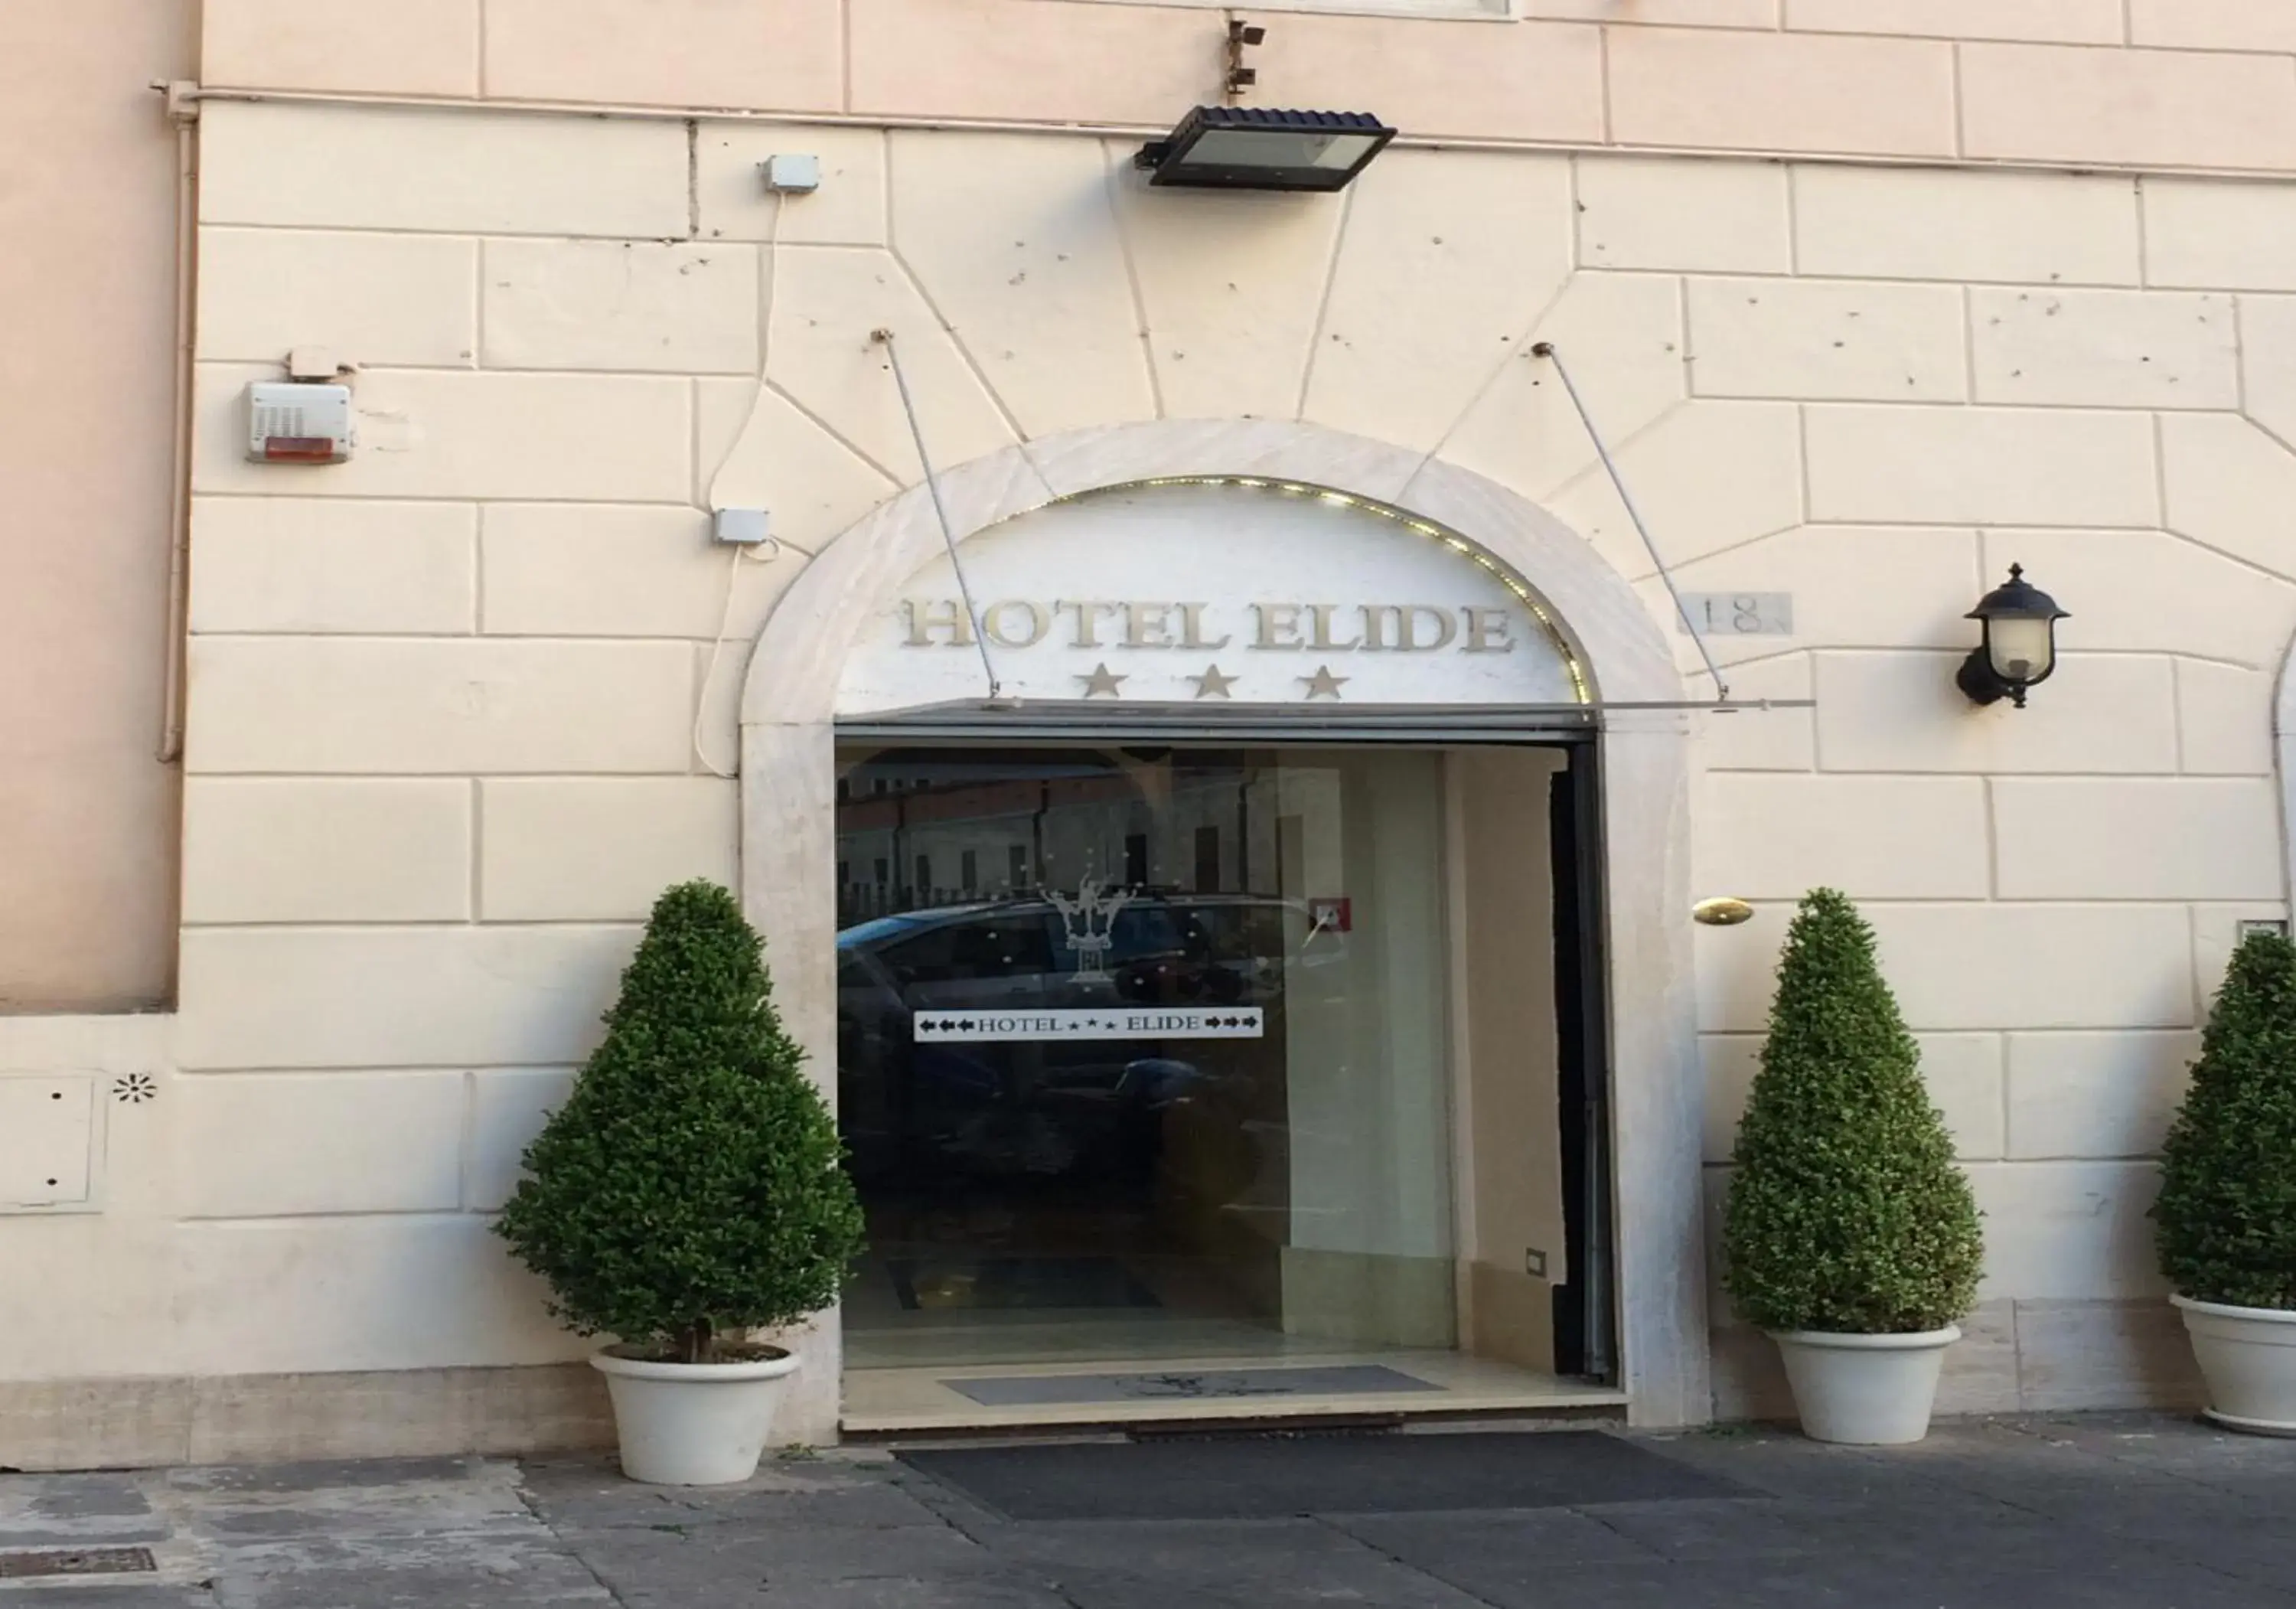 Facade/entrance in Hotel Elide